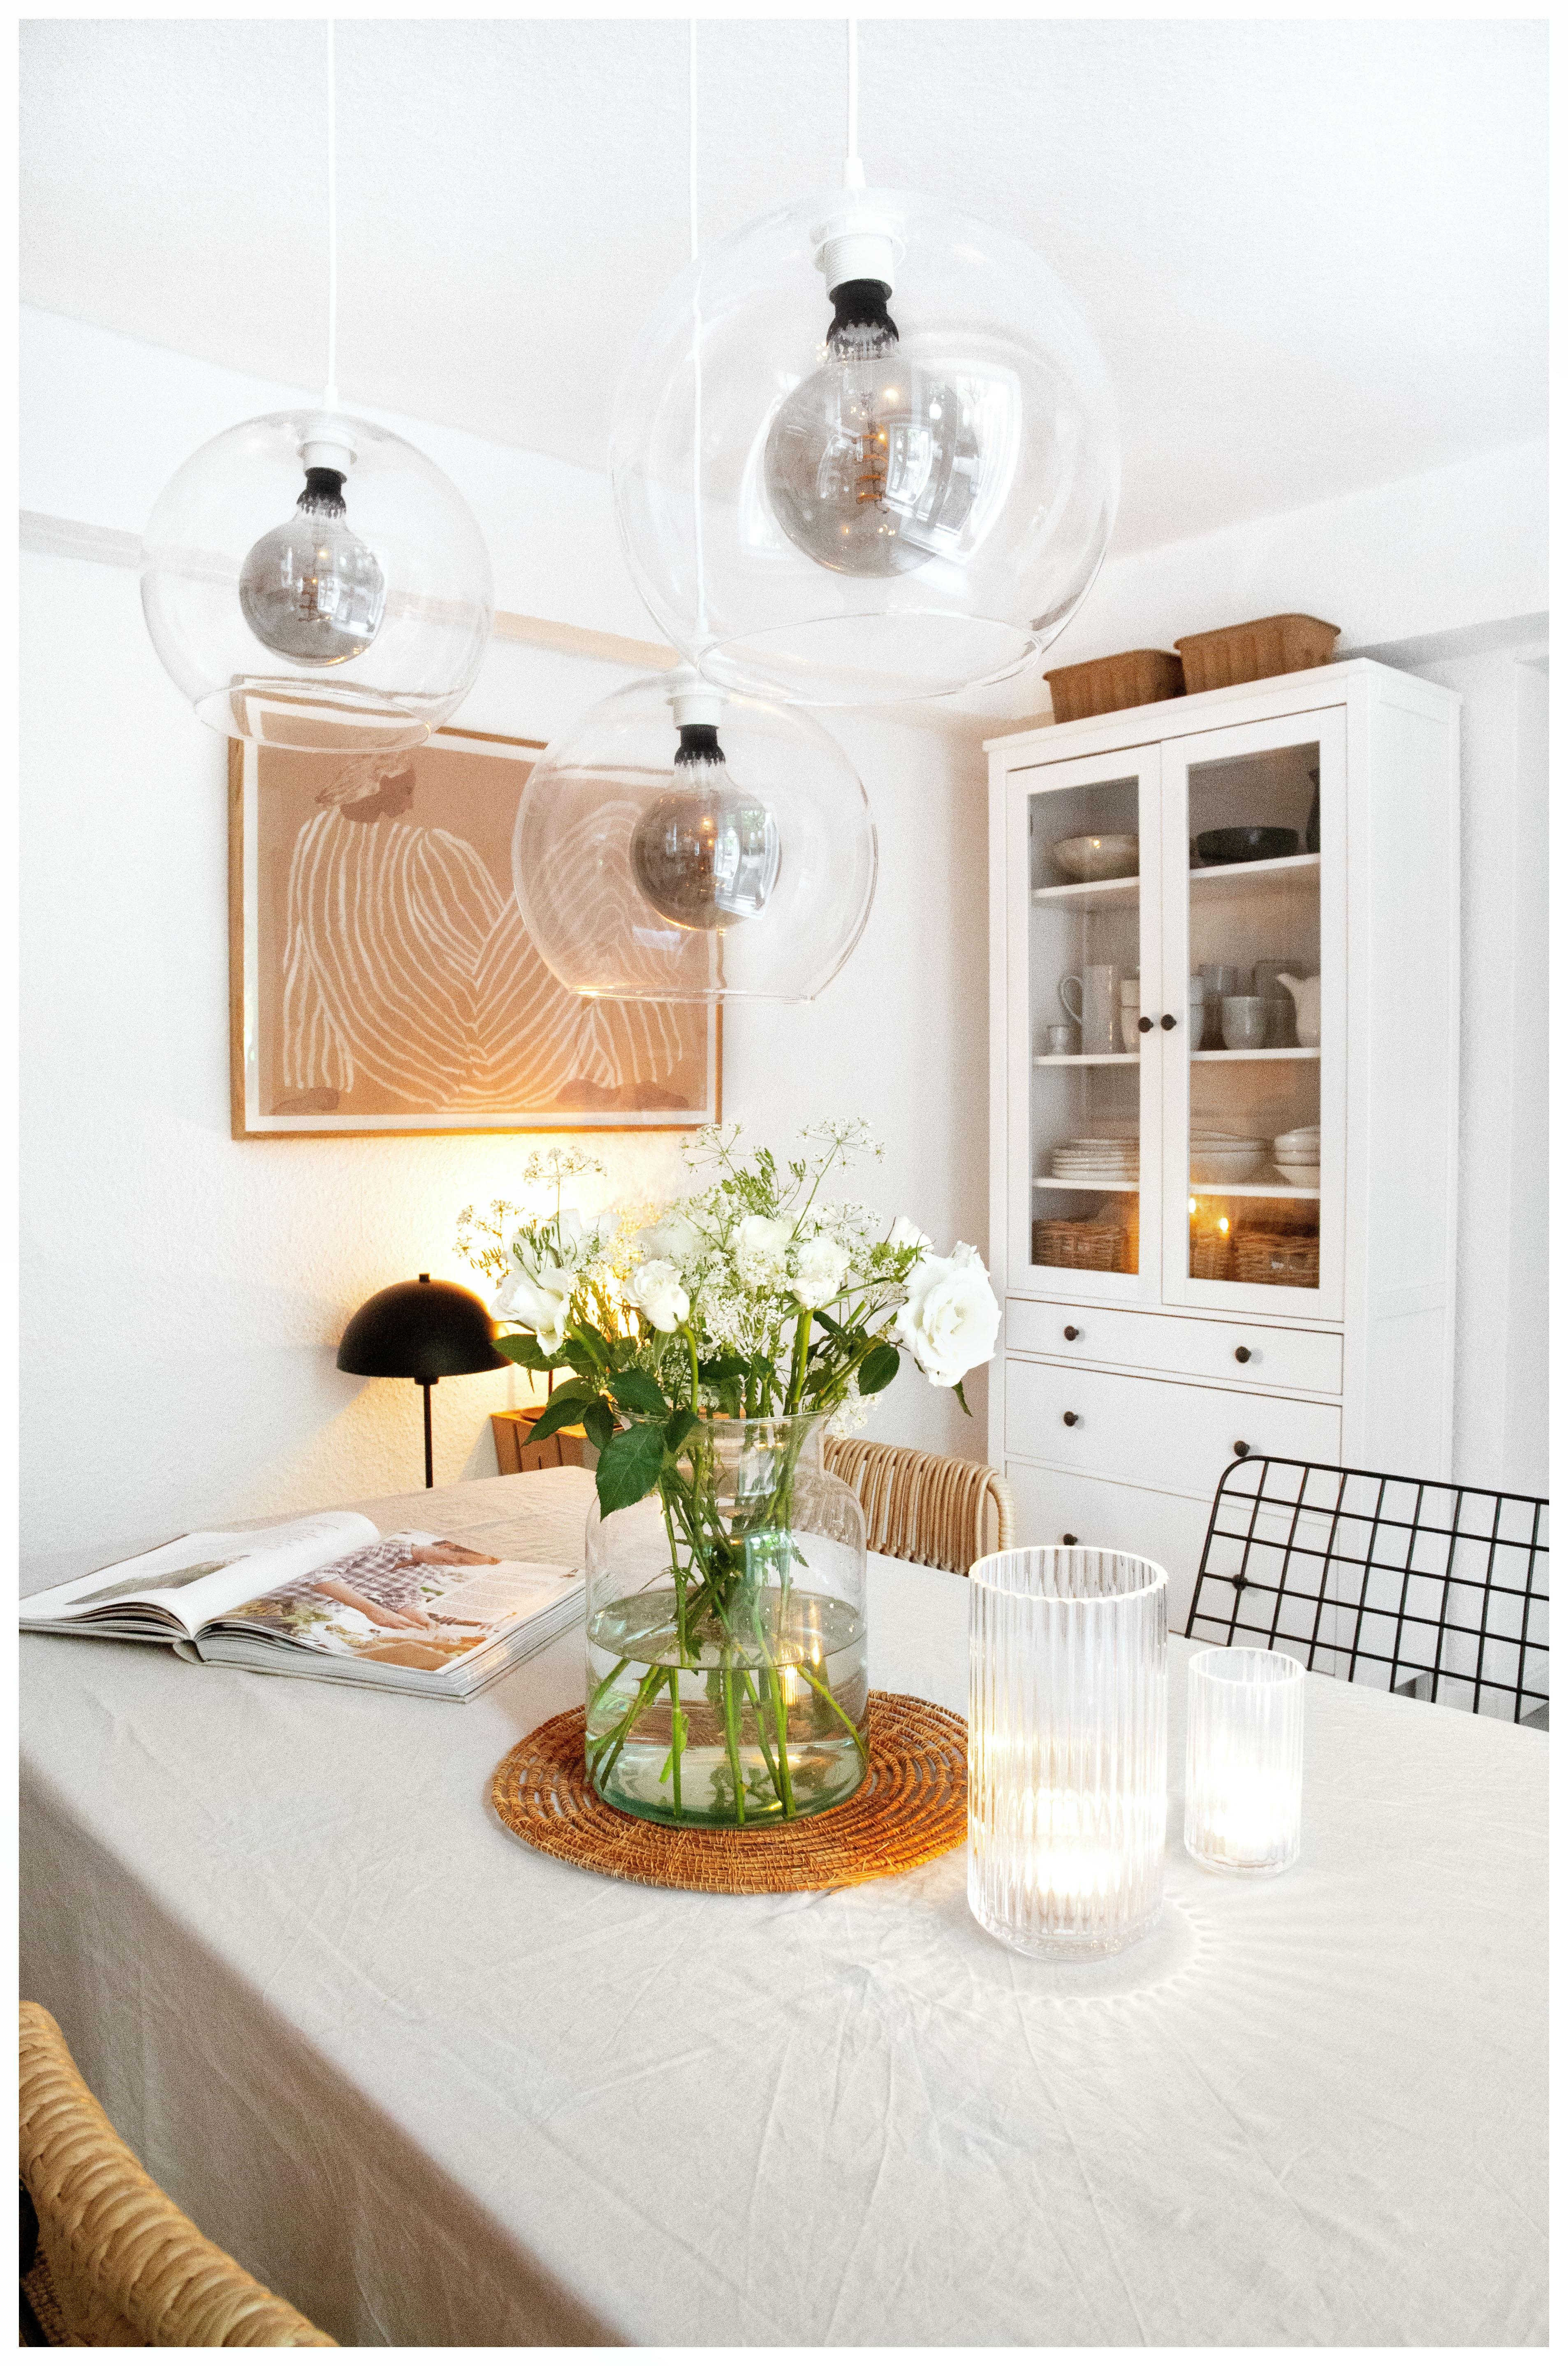 New Lights - in meiner Küche #kitchen #lights #wohnküche #cozy #wohnung 